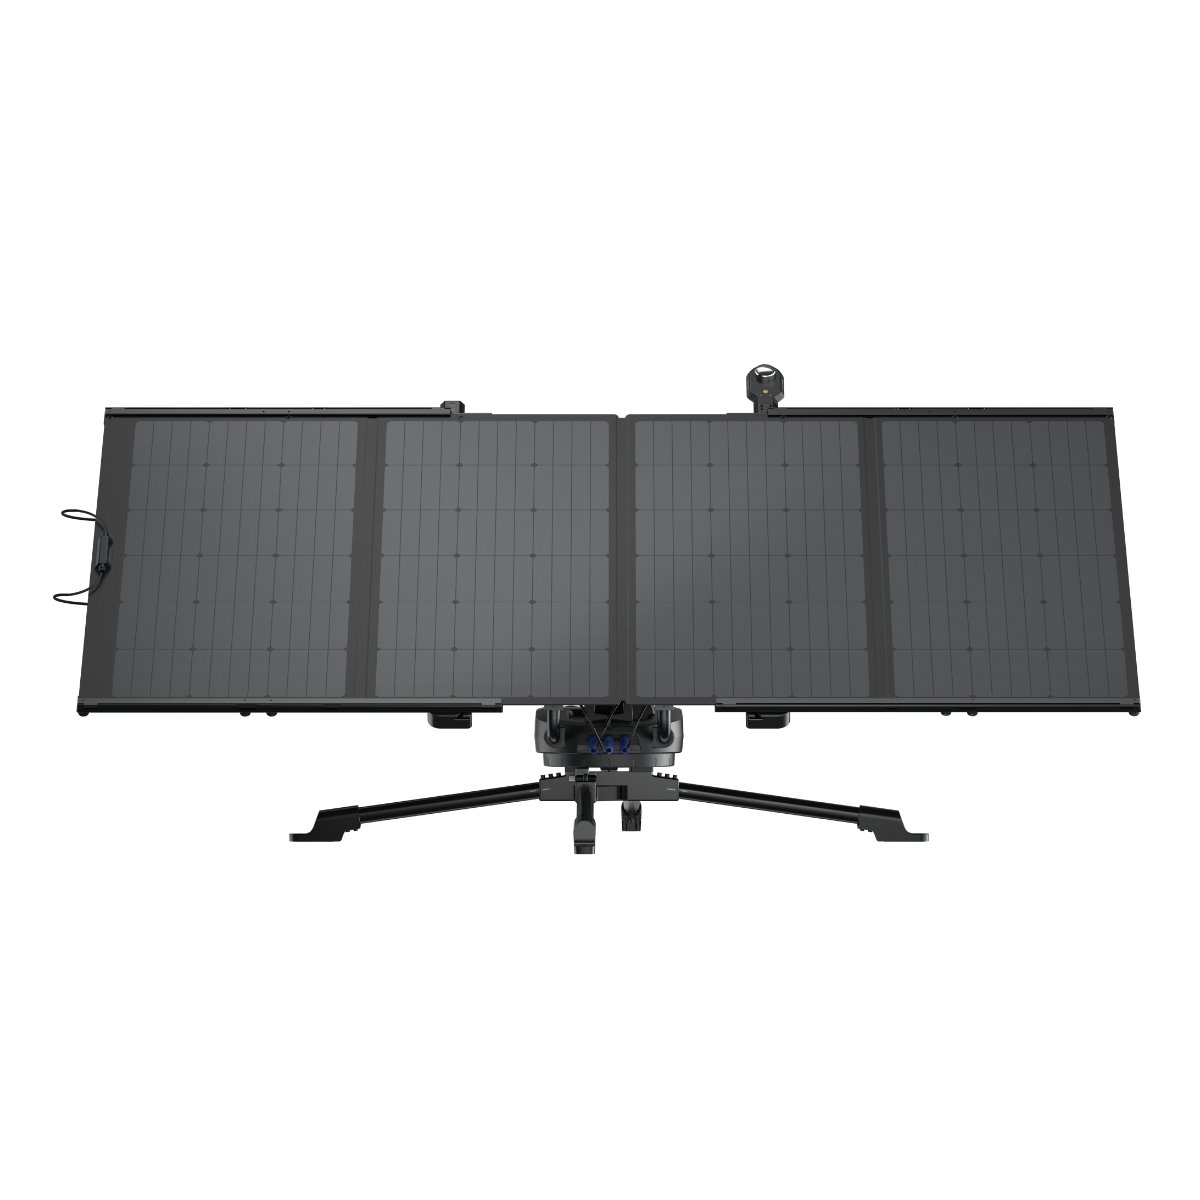 Компания EcoFlow представила уникальный солнечный робот EcoFlow Solar Tracker